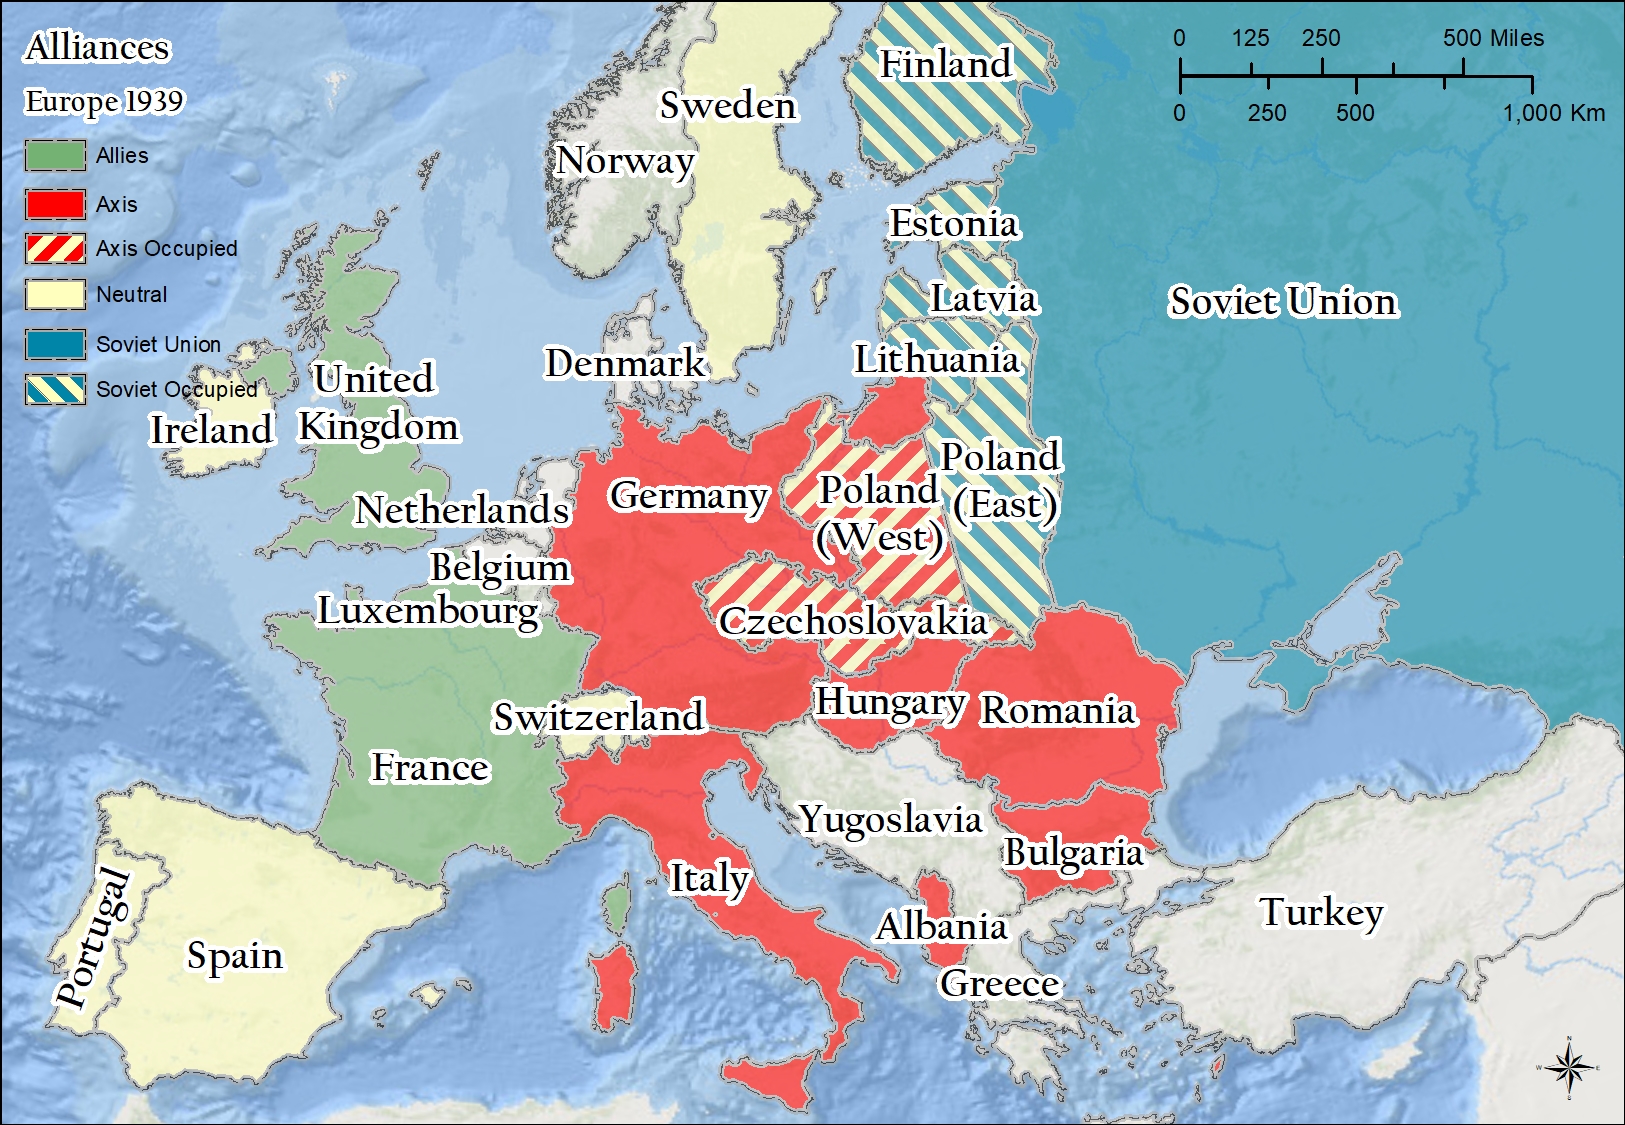 allied powers map ww2